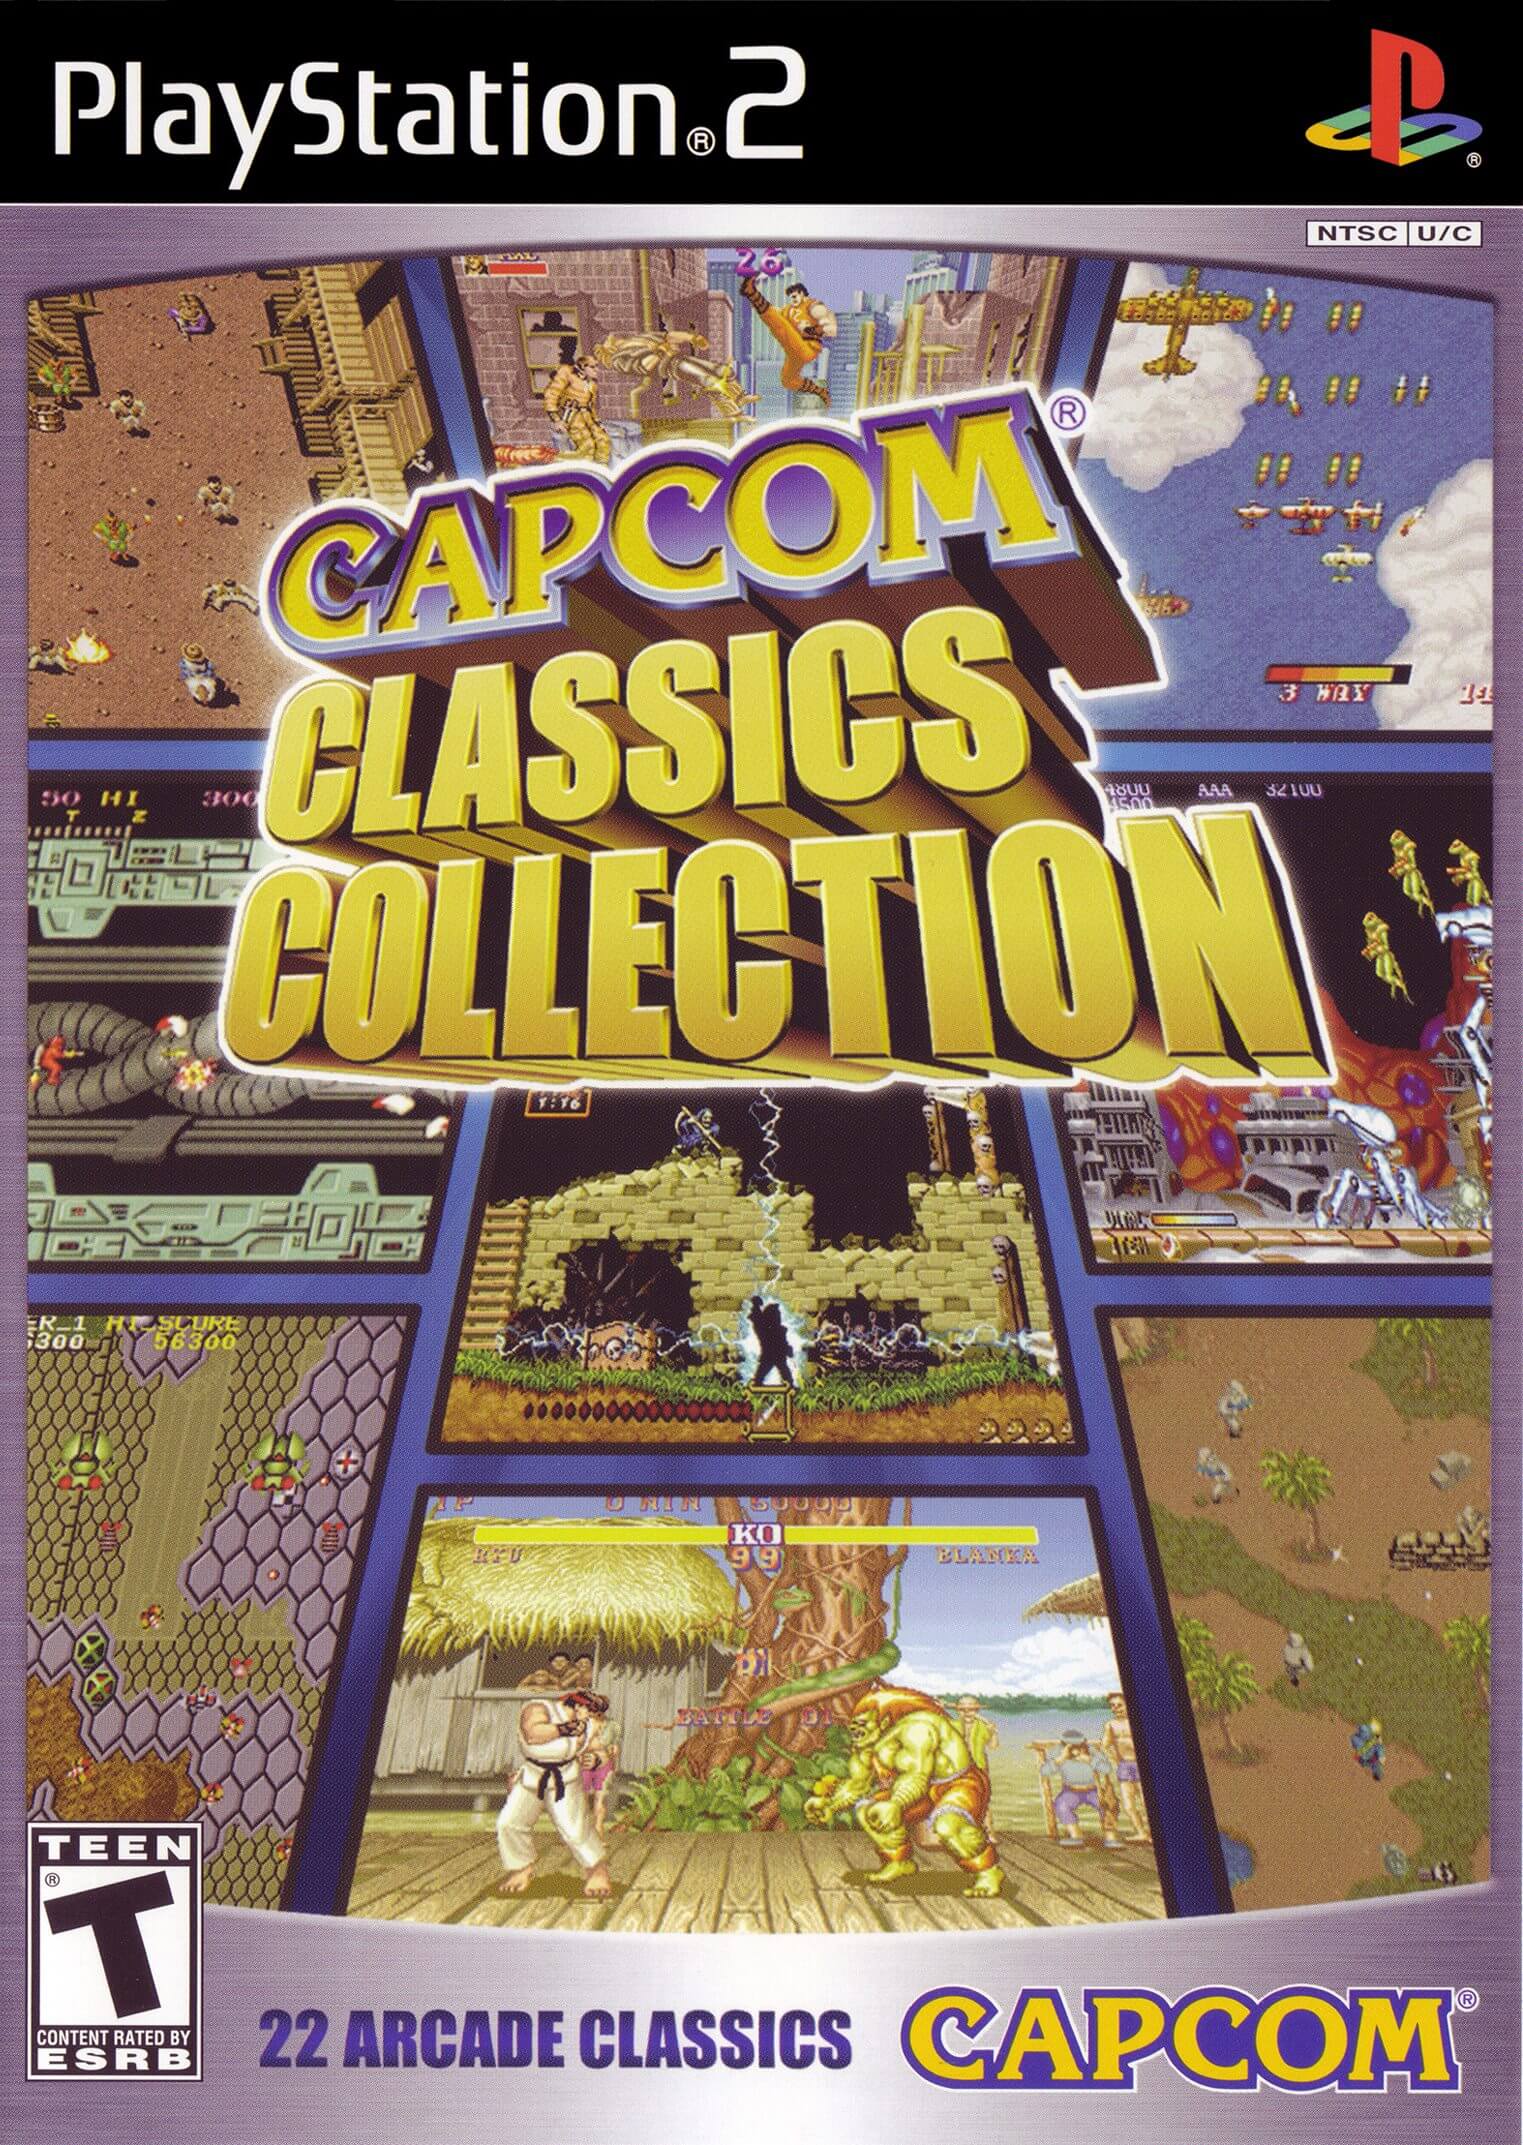 Capcom Classics Collection Vol. 1